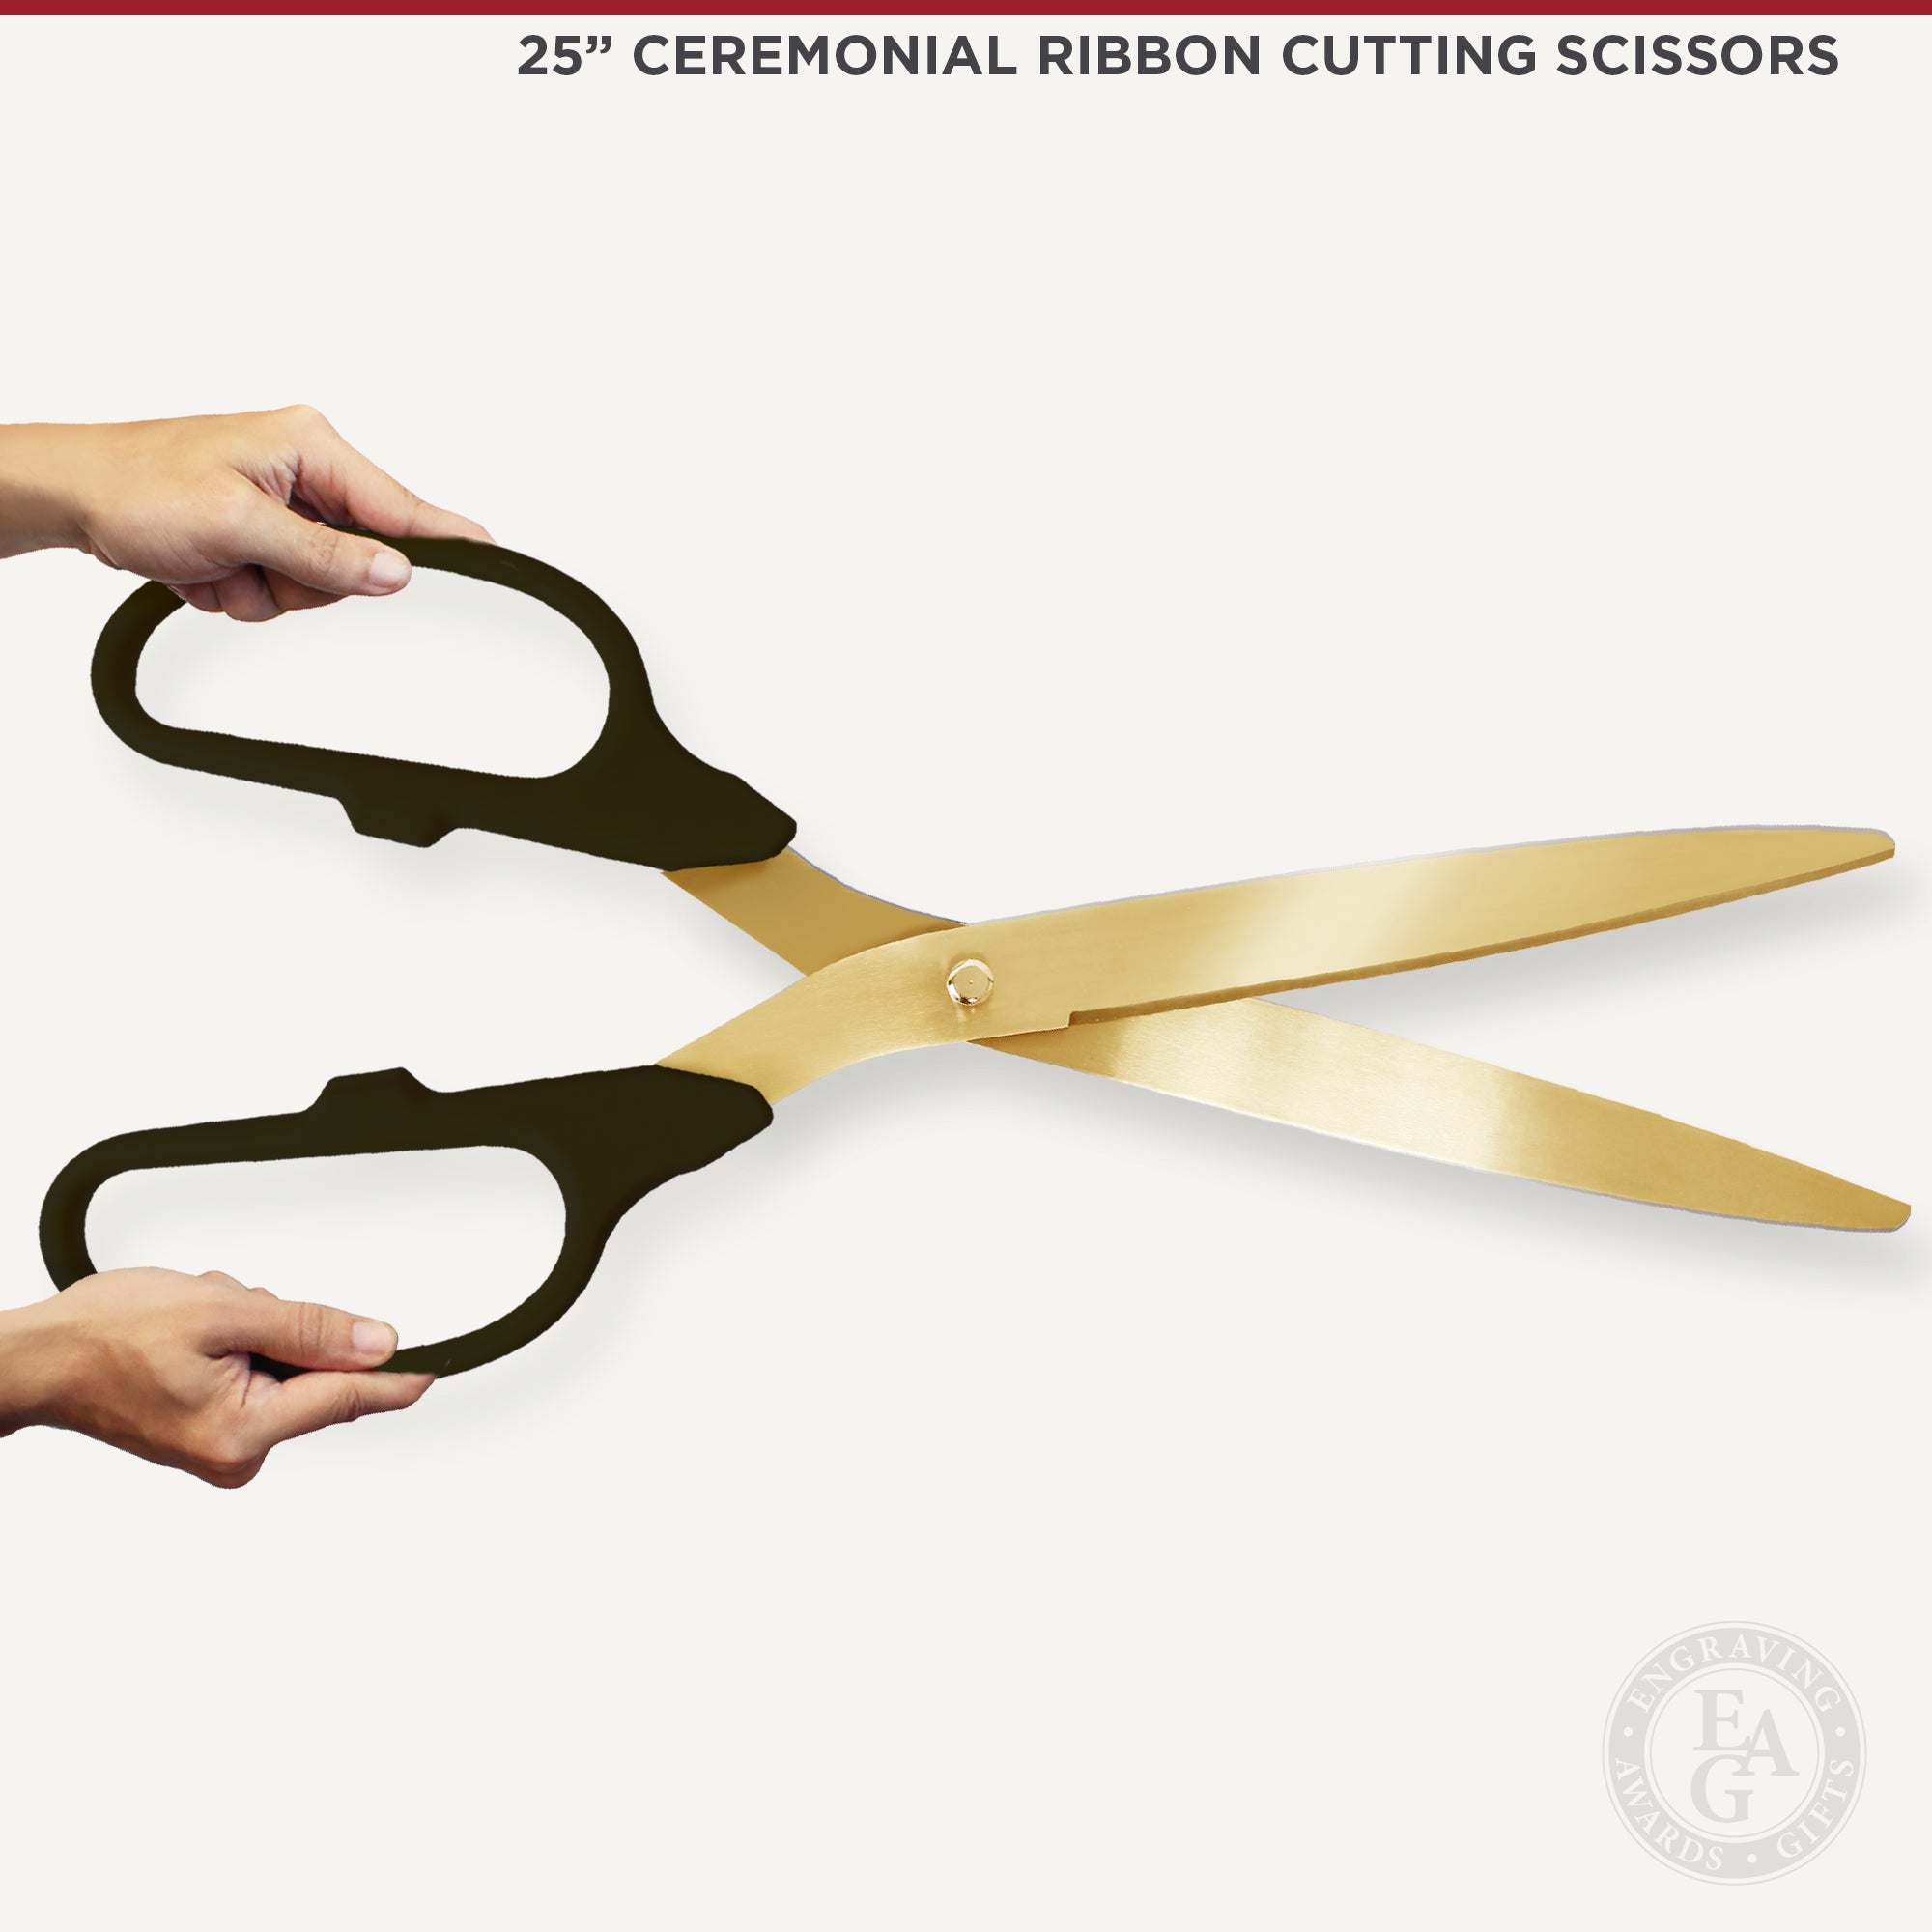 Golden Handle Stainless Steel Ceremonial Scissors